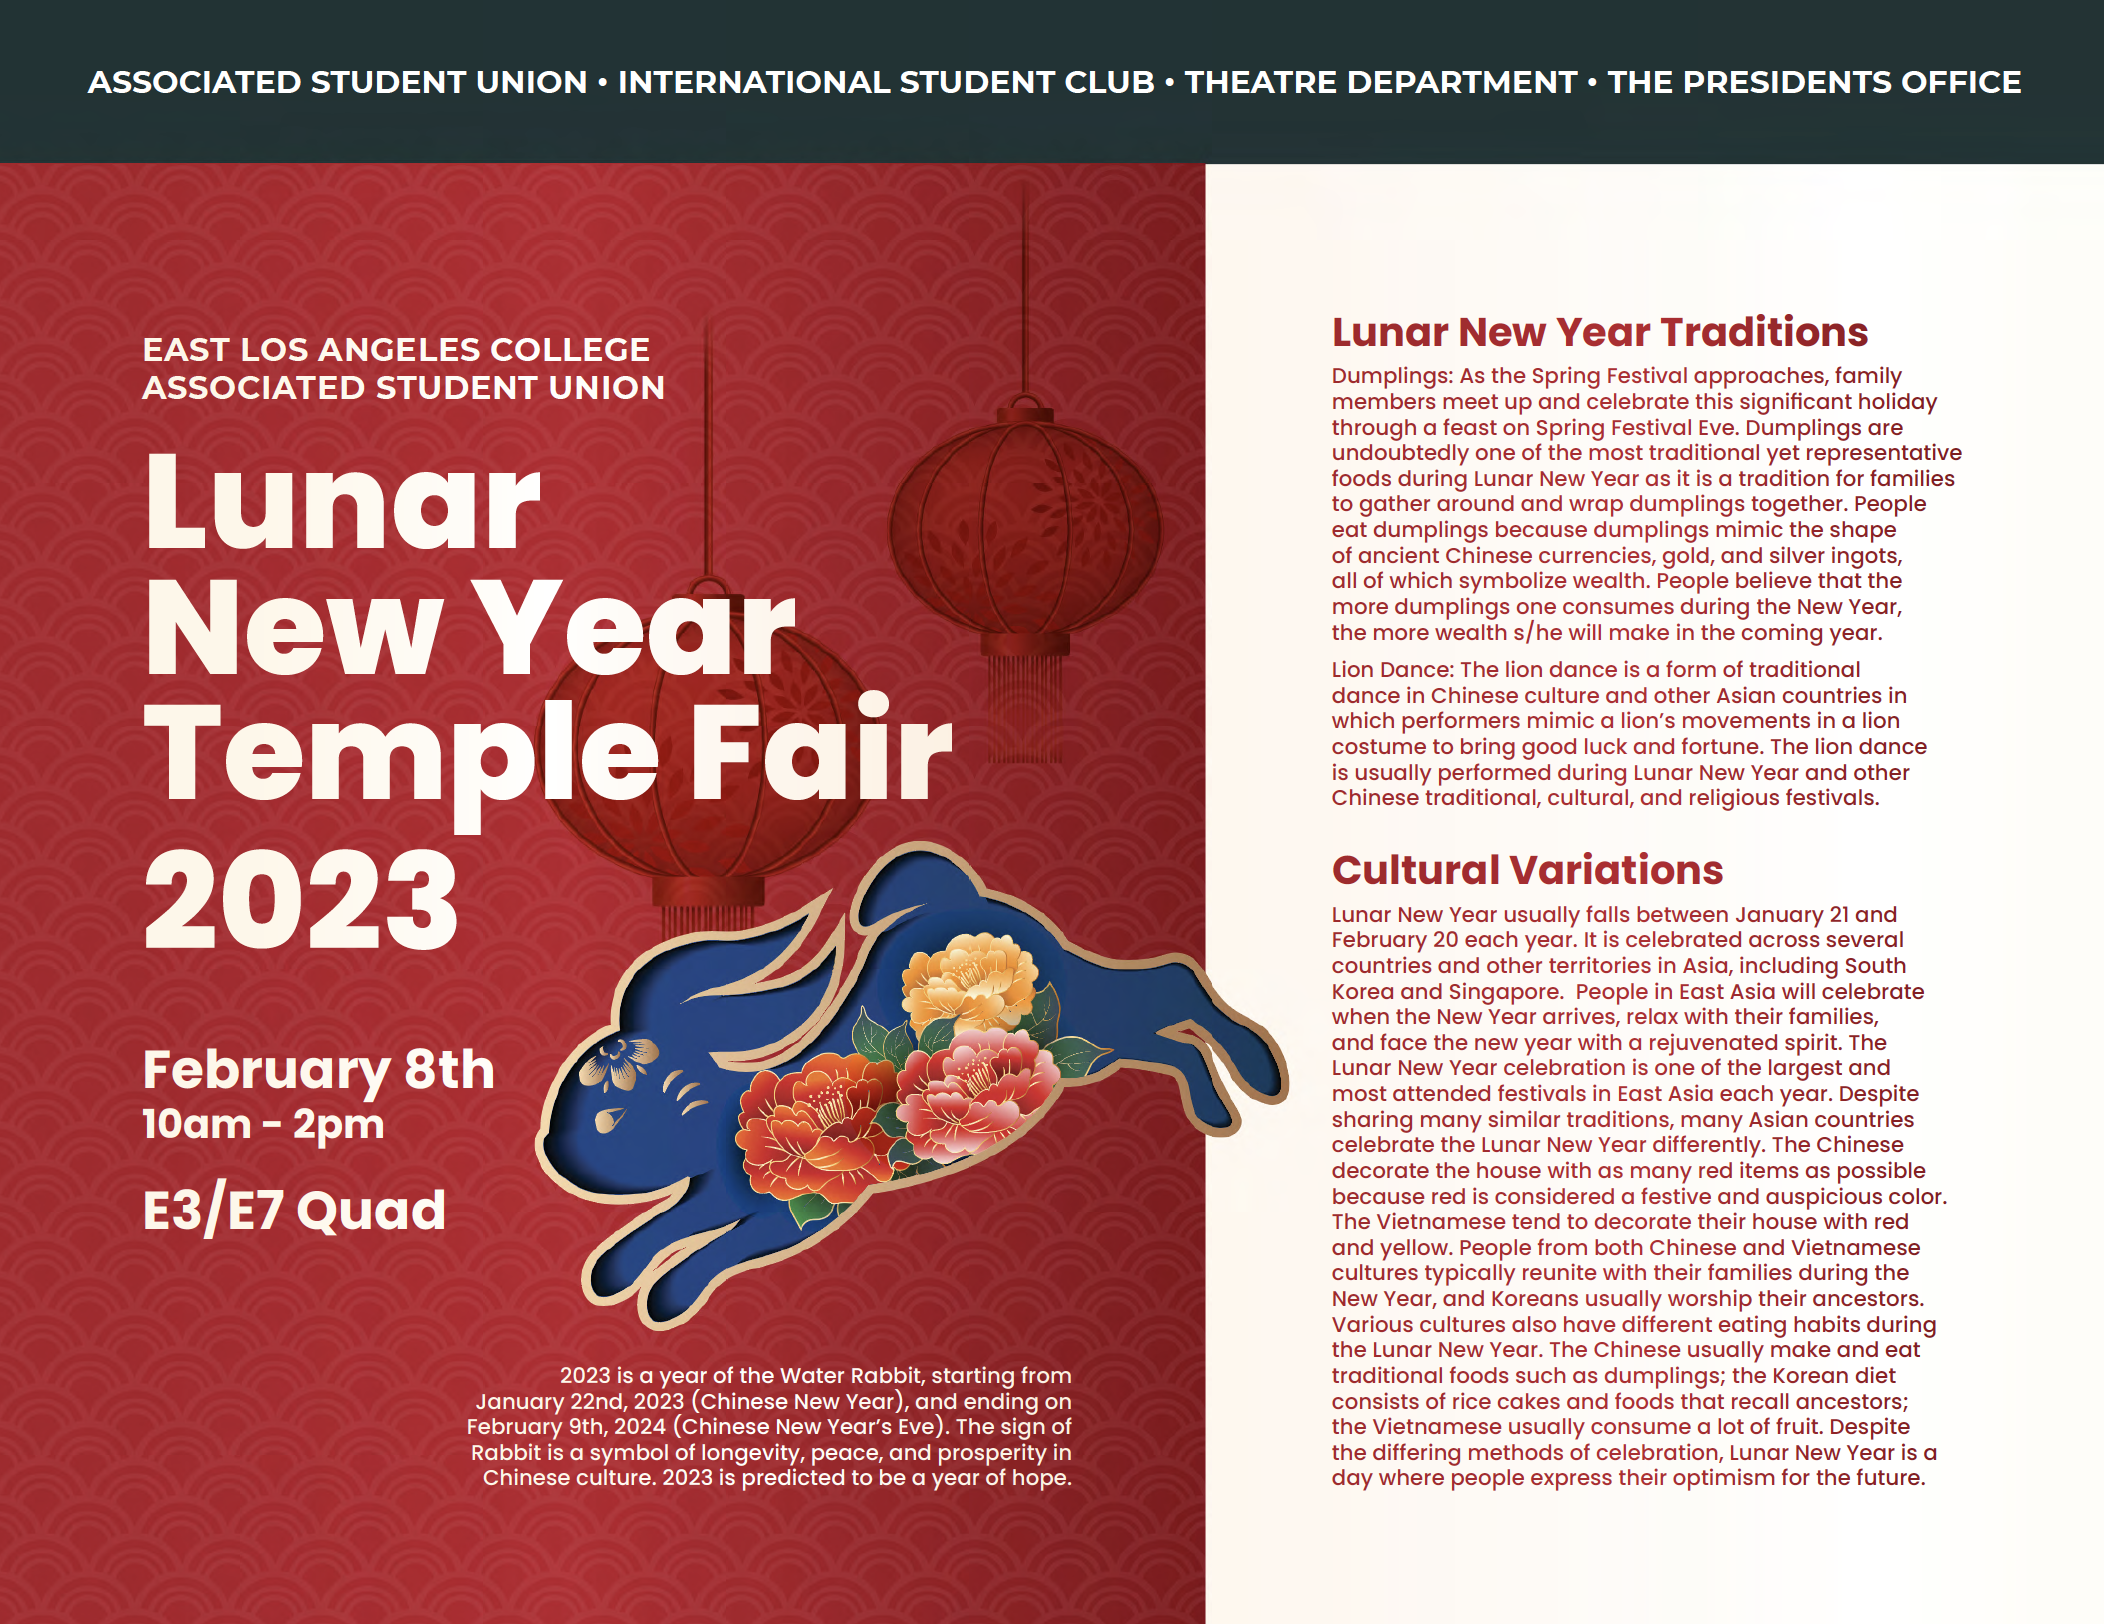 ELAC ASU Lunar New Year Traditions 2023 pg 1